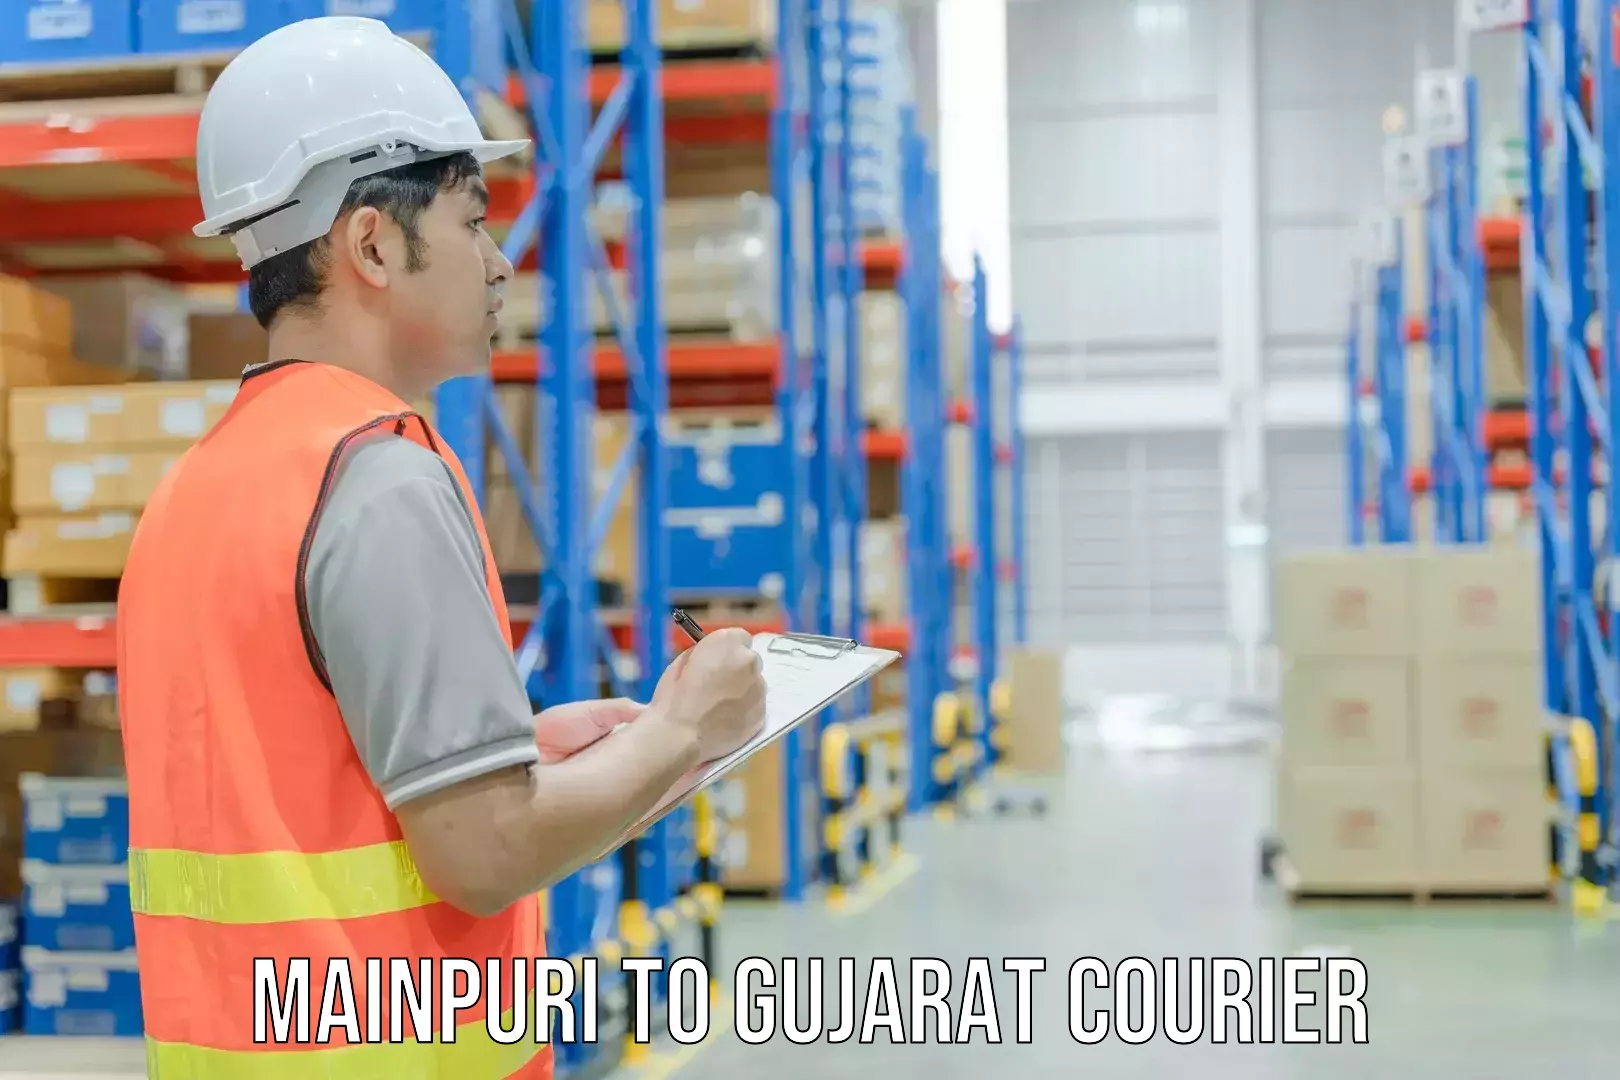 Nationwide shipping capabilities Mainpuri to Gujarat